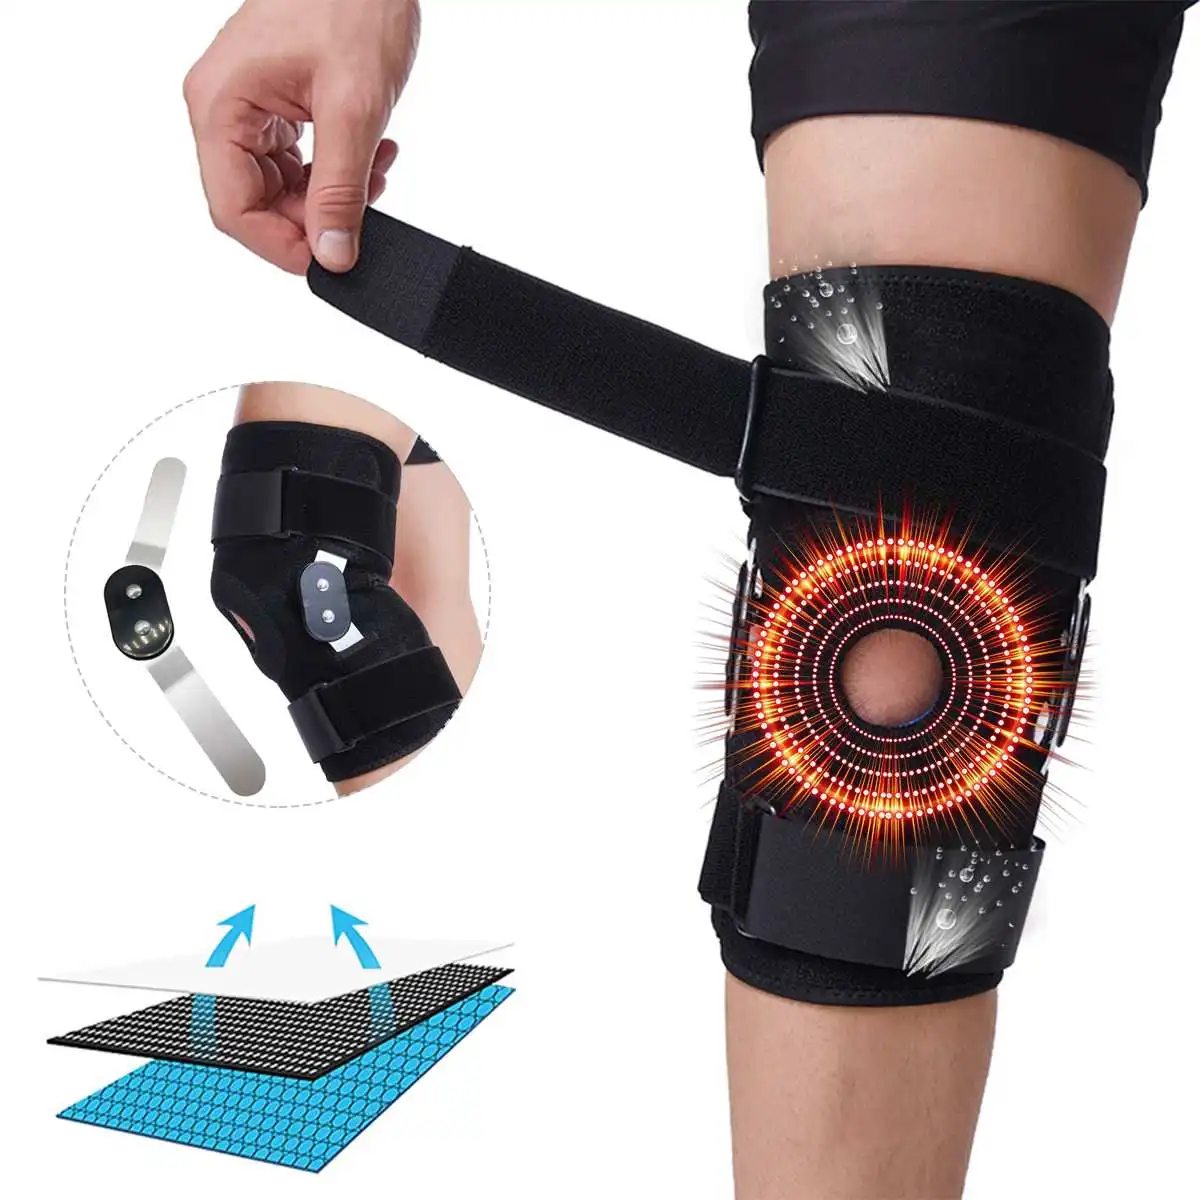 

Aluminium Adjustable Medical Hinged Knee Orthosis Brace Support Ligament Sport Injury Orthopedic Splint Knee Pads Outdoor